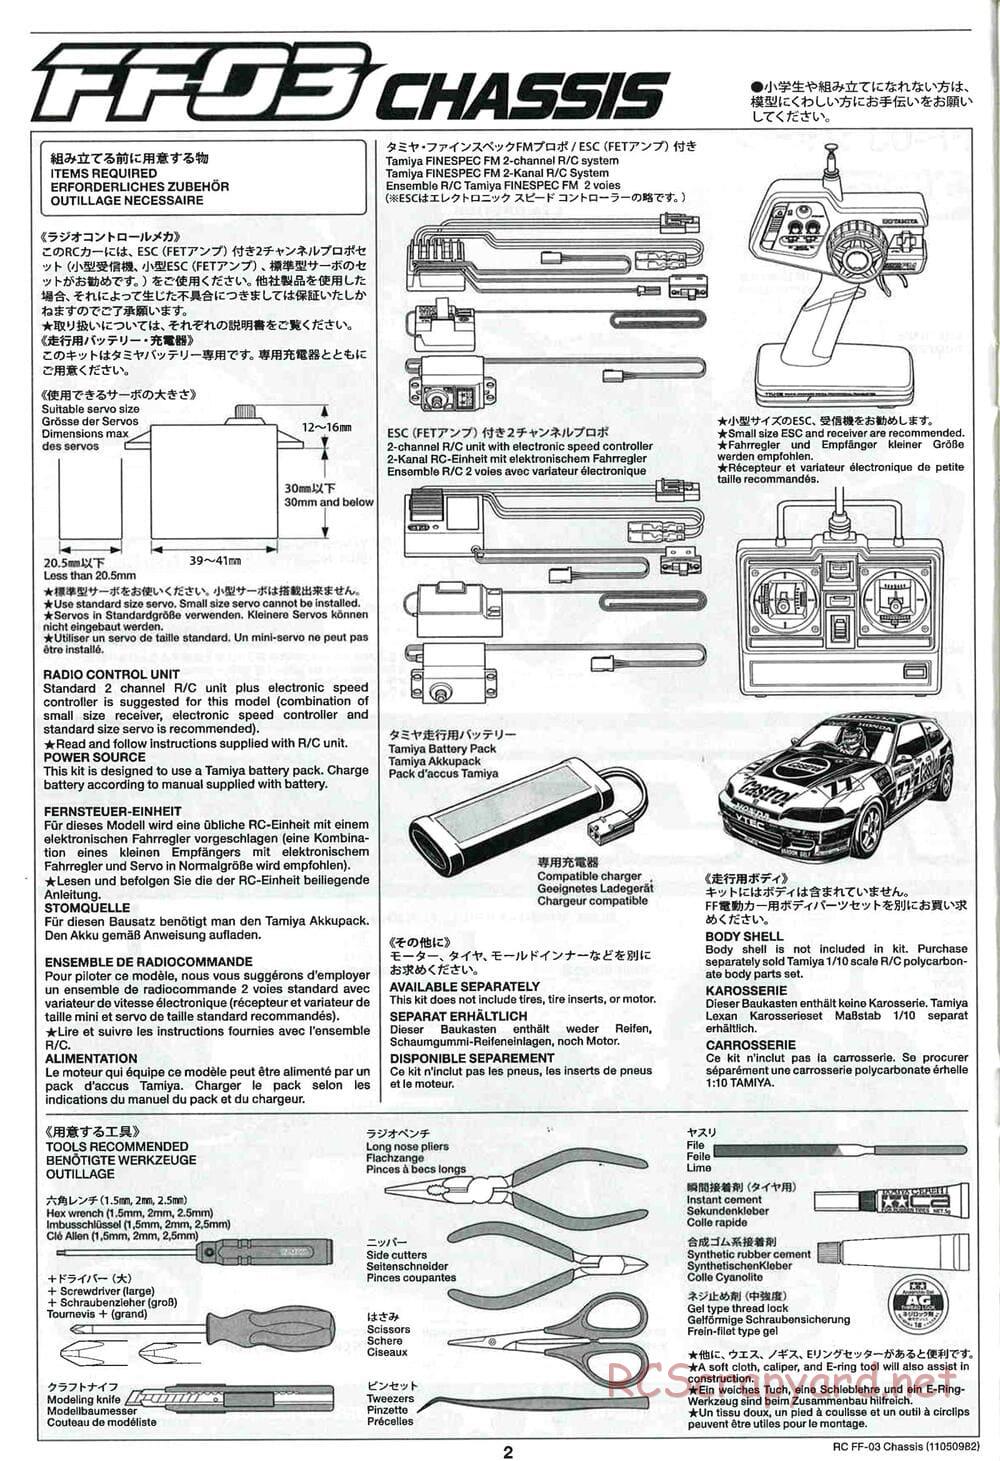 Tamiya - Honda CR-Z - FF-03 Chassis - Manual - Page 2